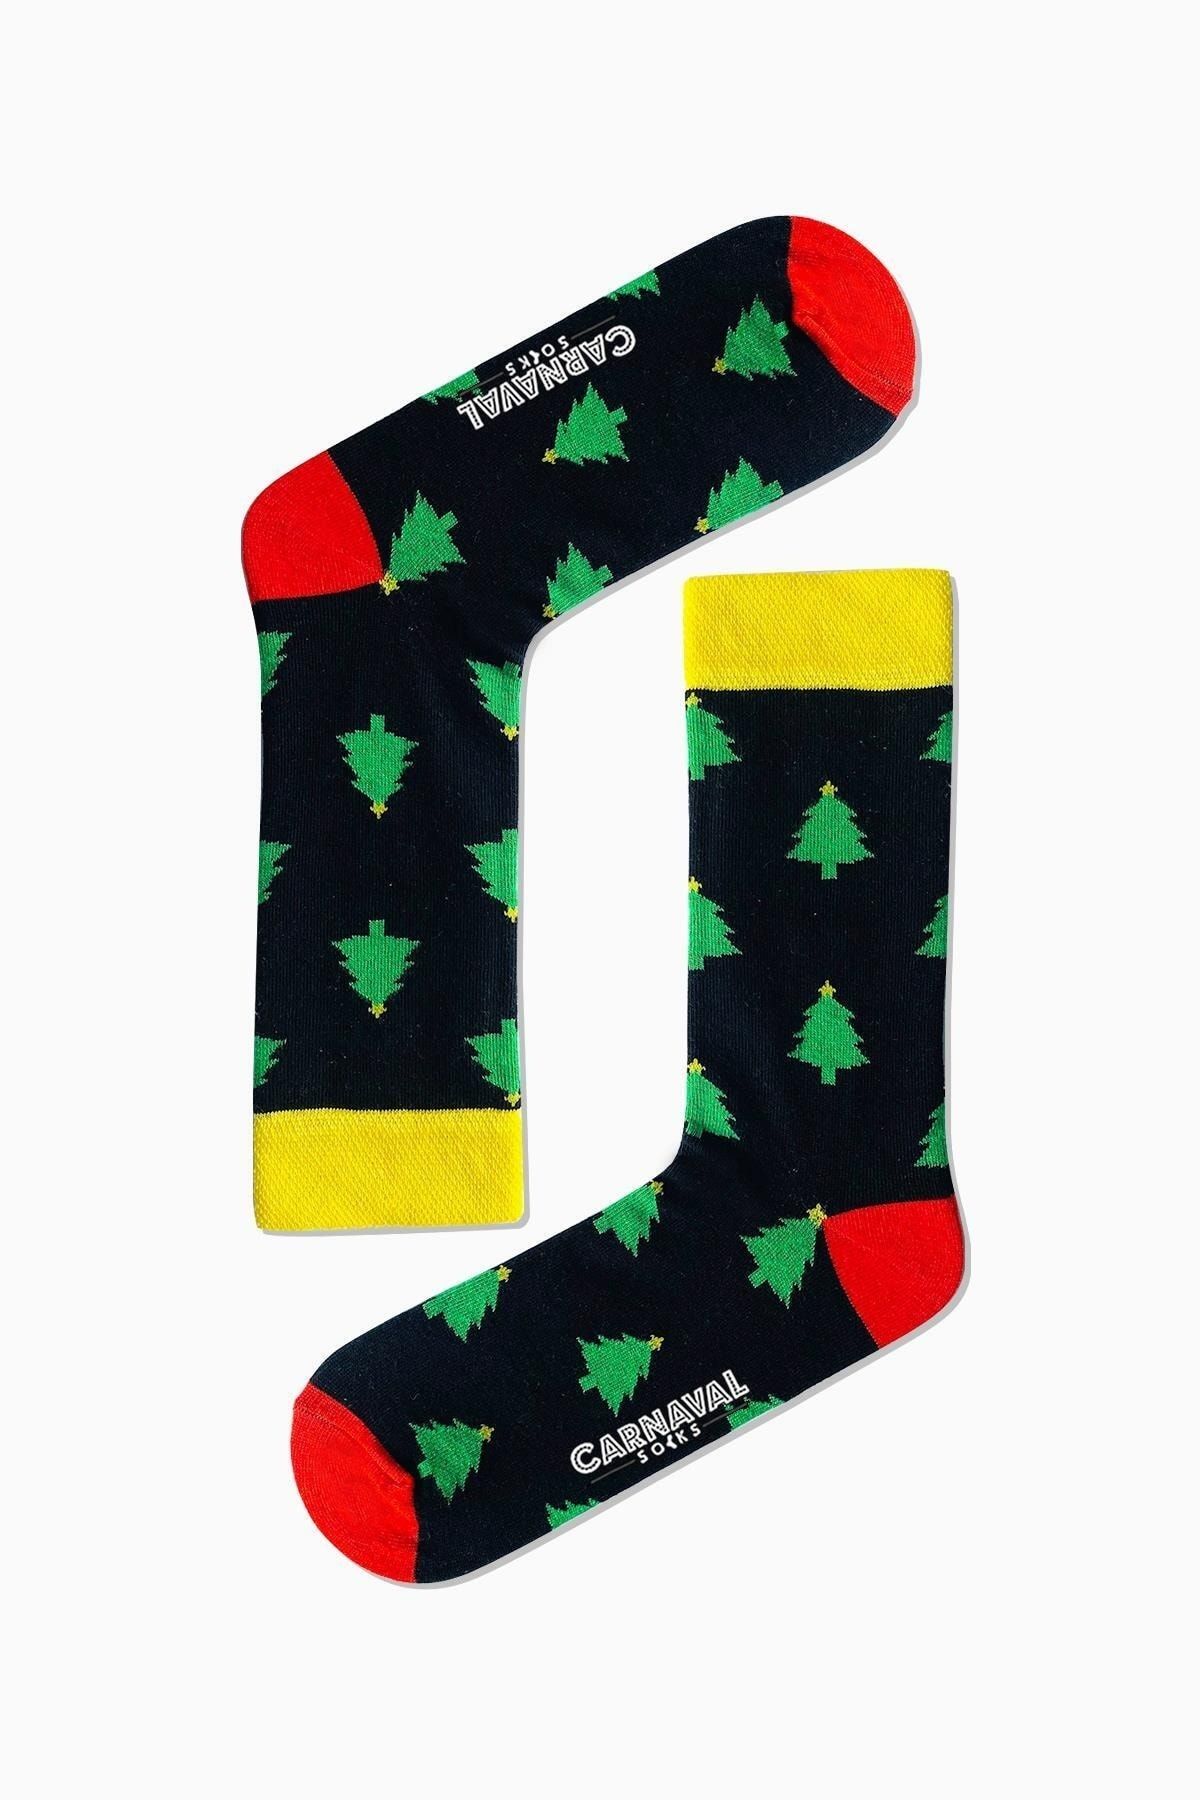 CARNAVAL SOCKS Yılbaşı Çam Ağacı Desenli Renkli Çorap